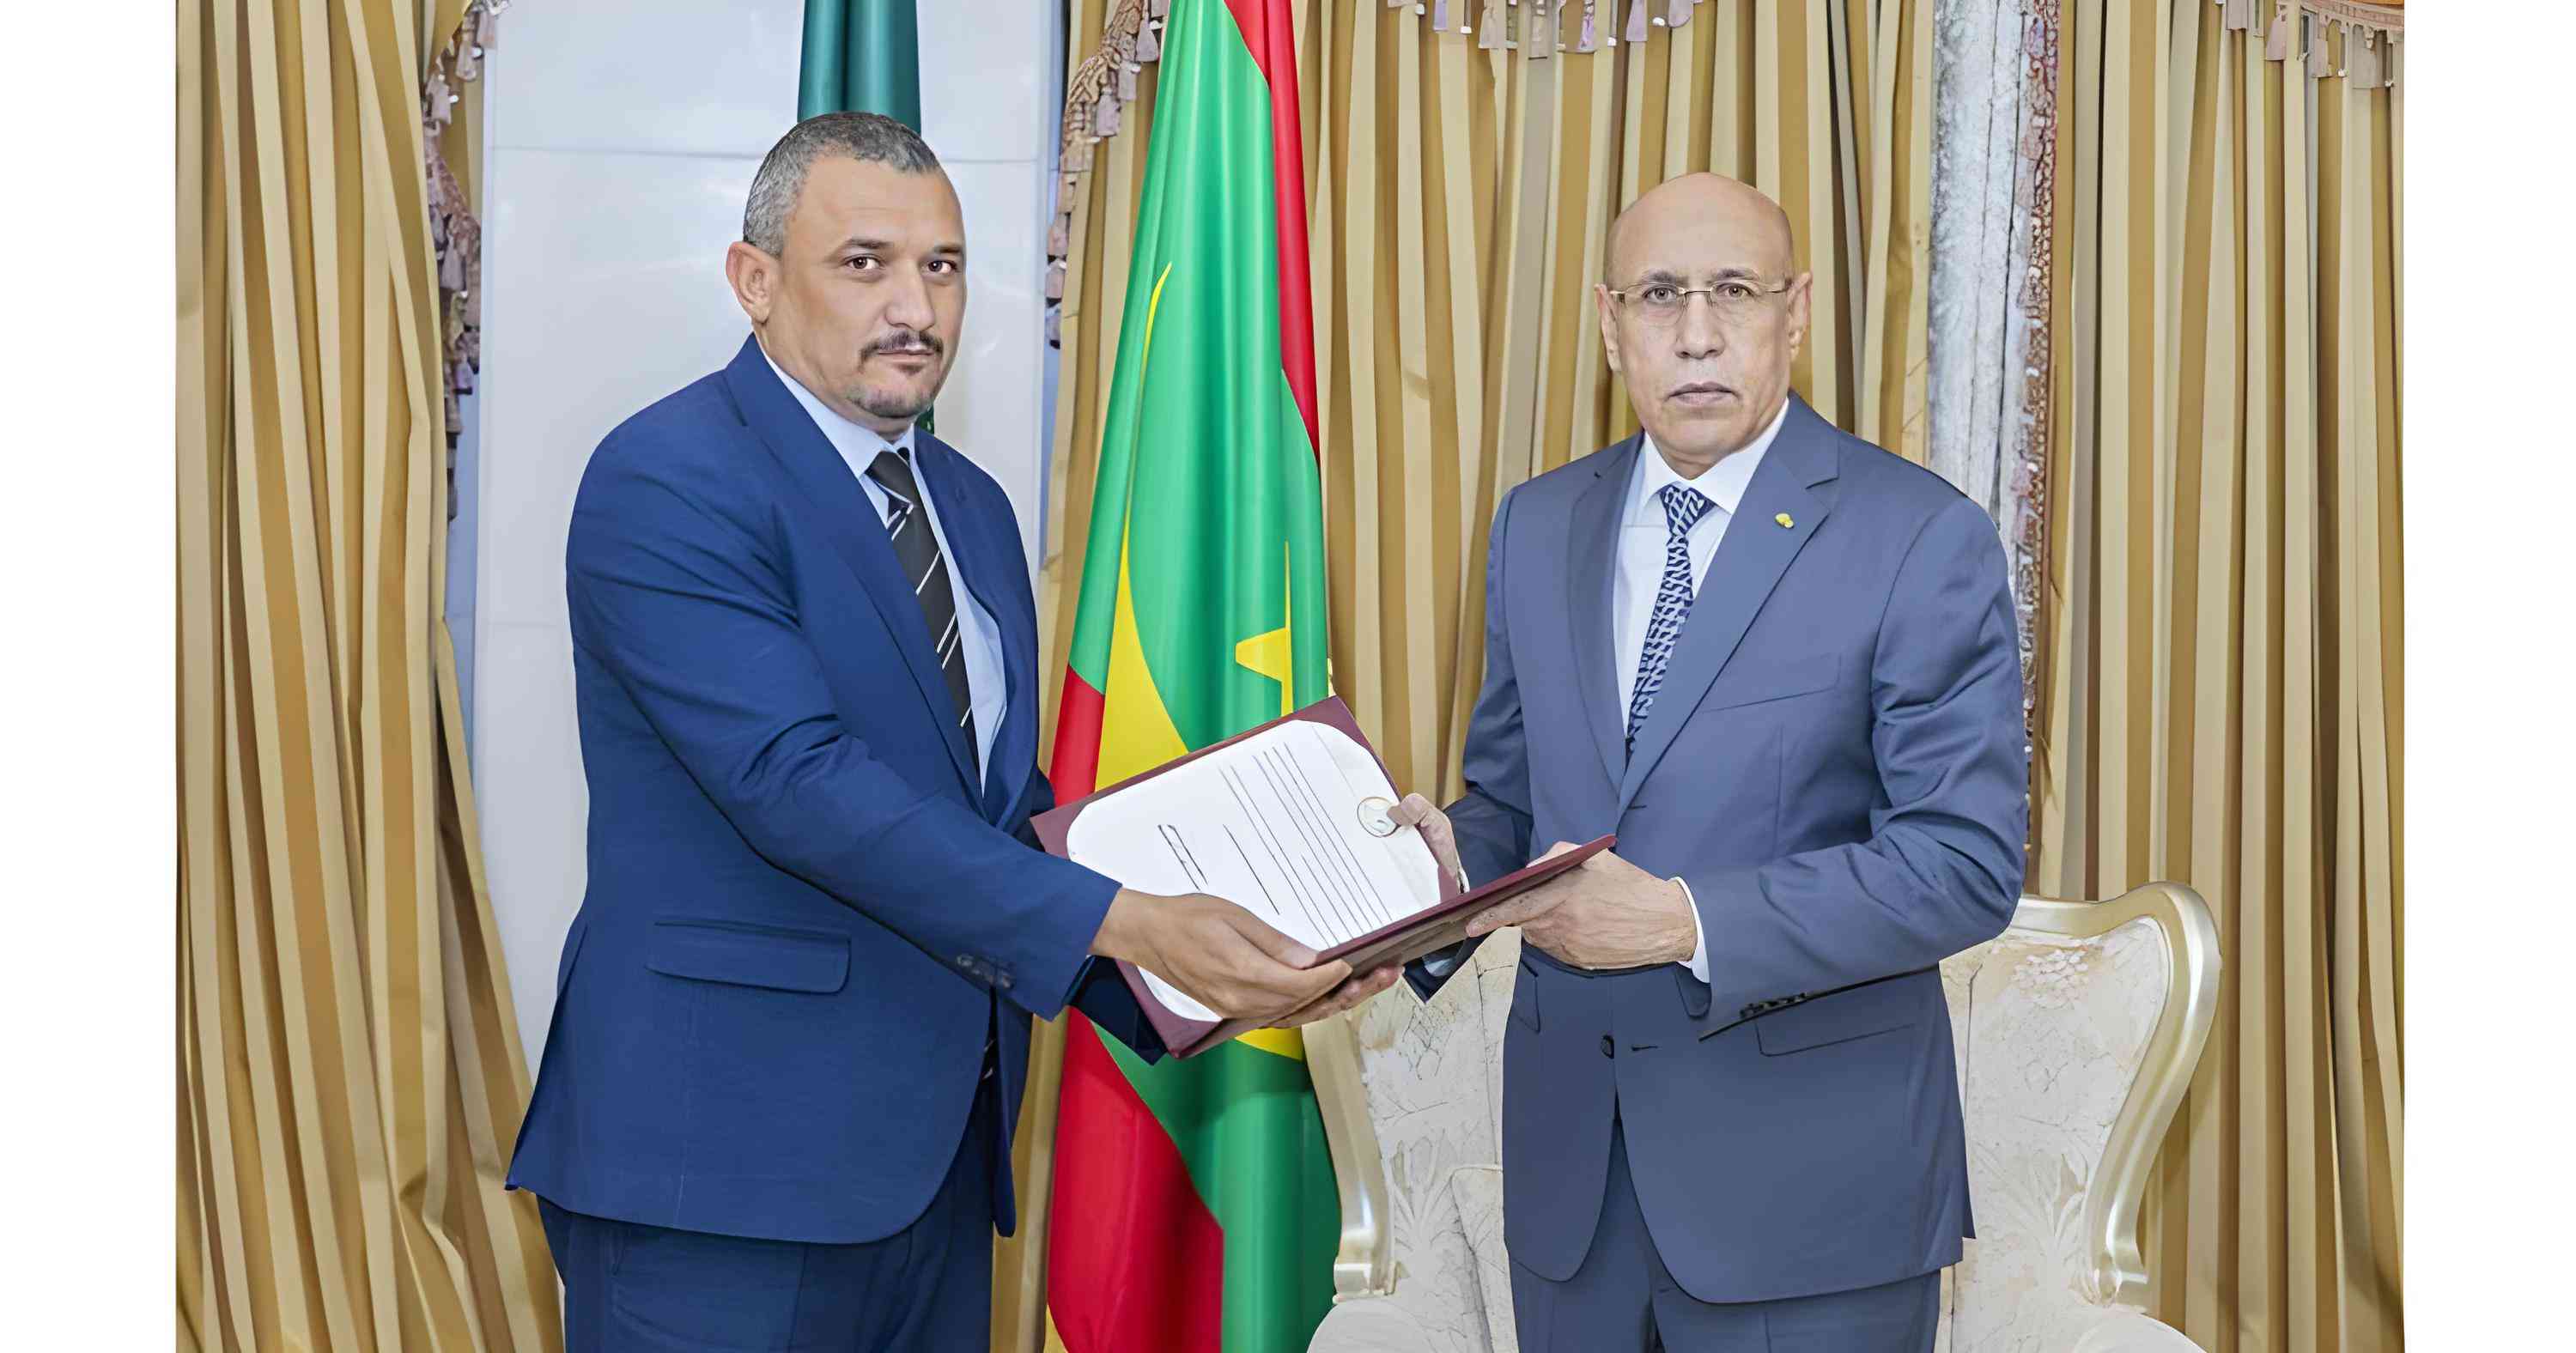 الرئيس الموريتاني يتسلم رسالة من الرئيس الليبي تتمحور حول تفعيل دور اتحاد المغرب العربي